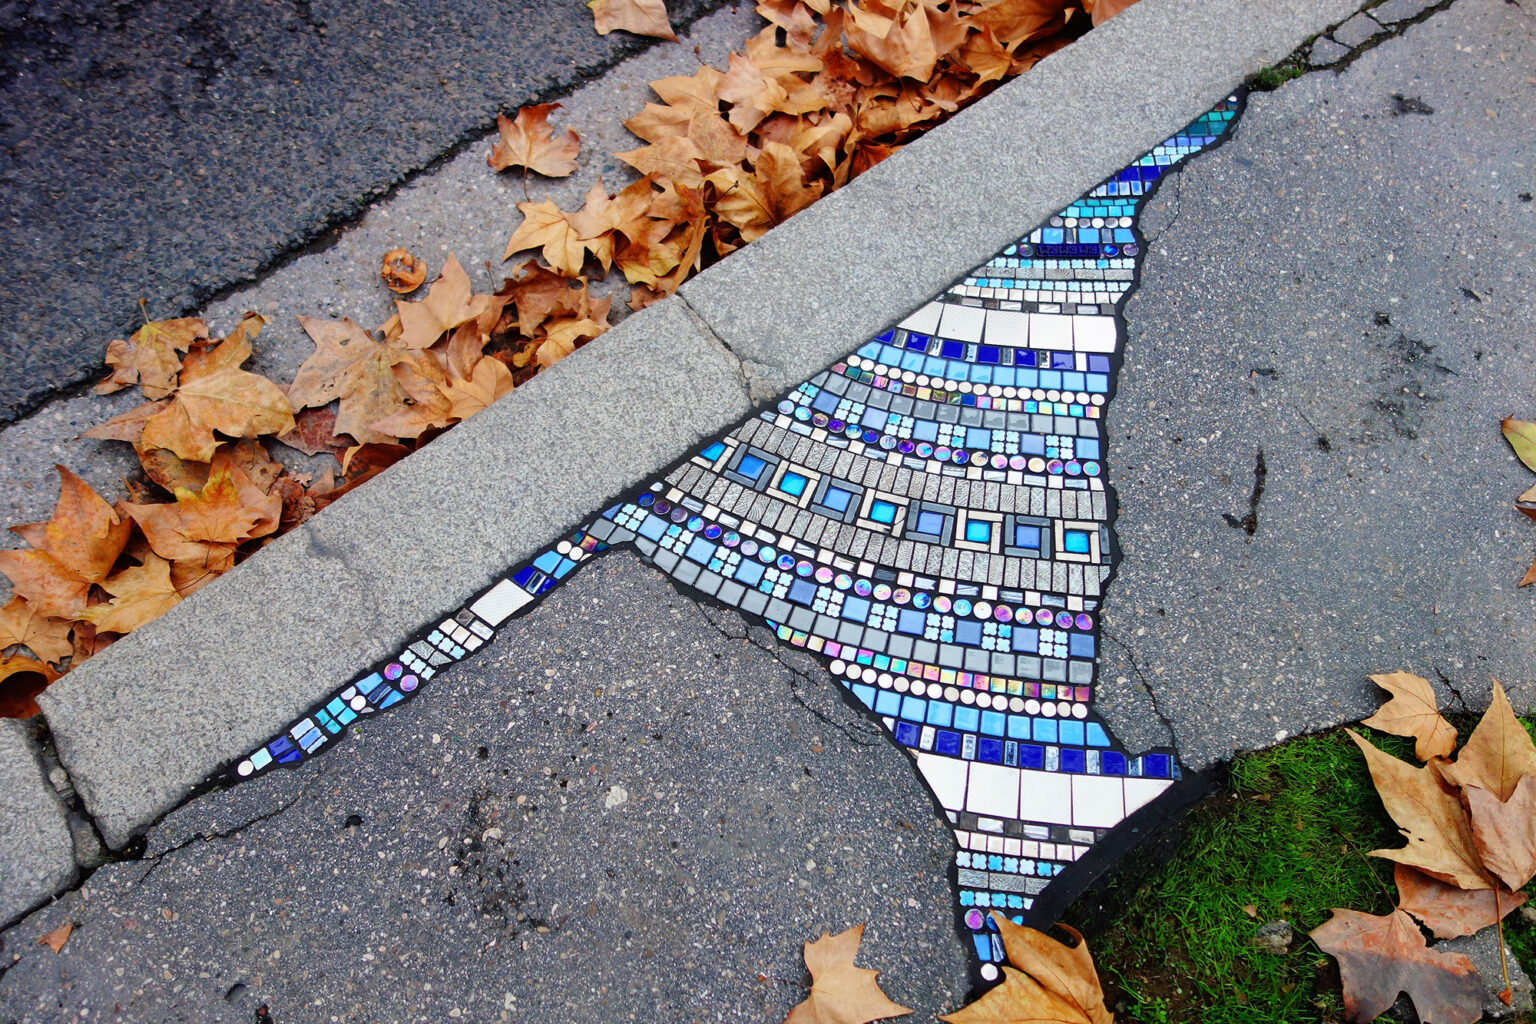 Ulični umetnik keramičkim mozaikom krpi oštećene fasade i trotoar